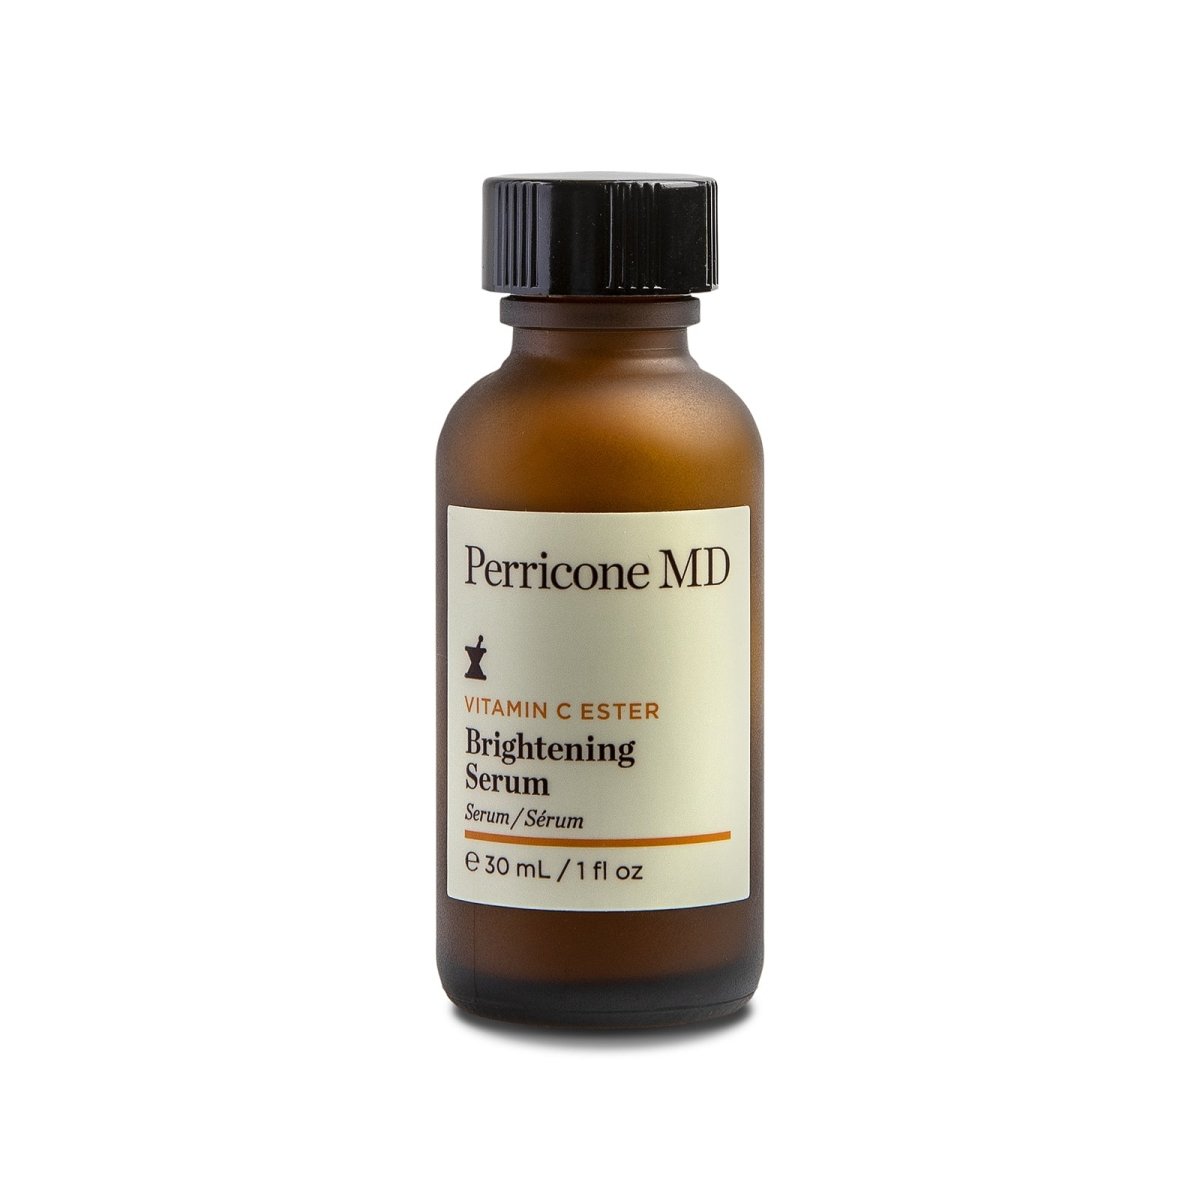 Perricone MD Vitamin C Ester Brightening Serum - SkincareEssentials